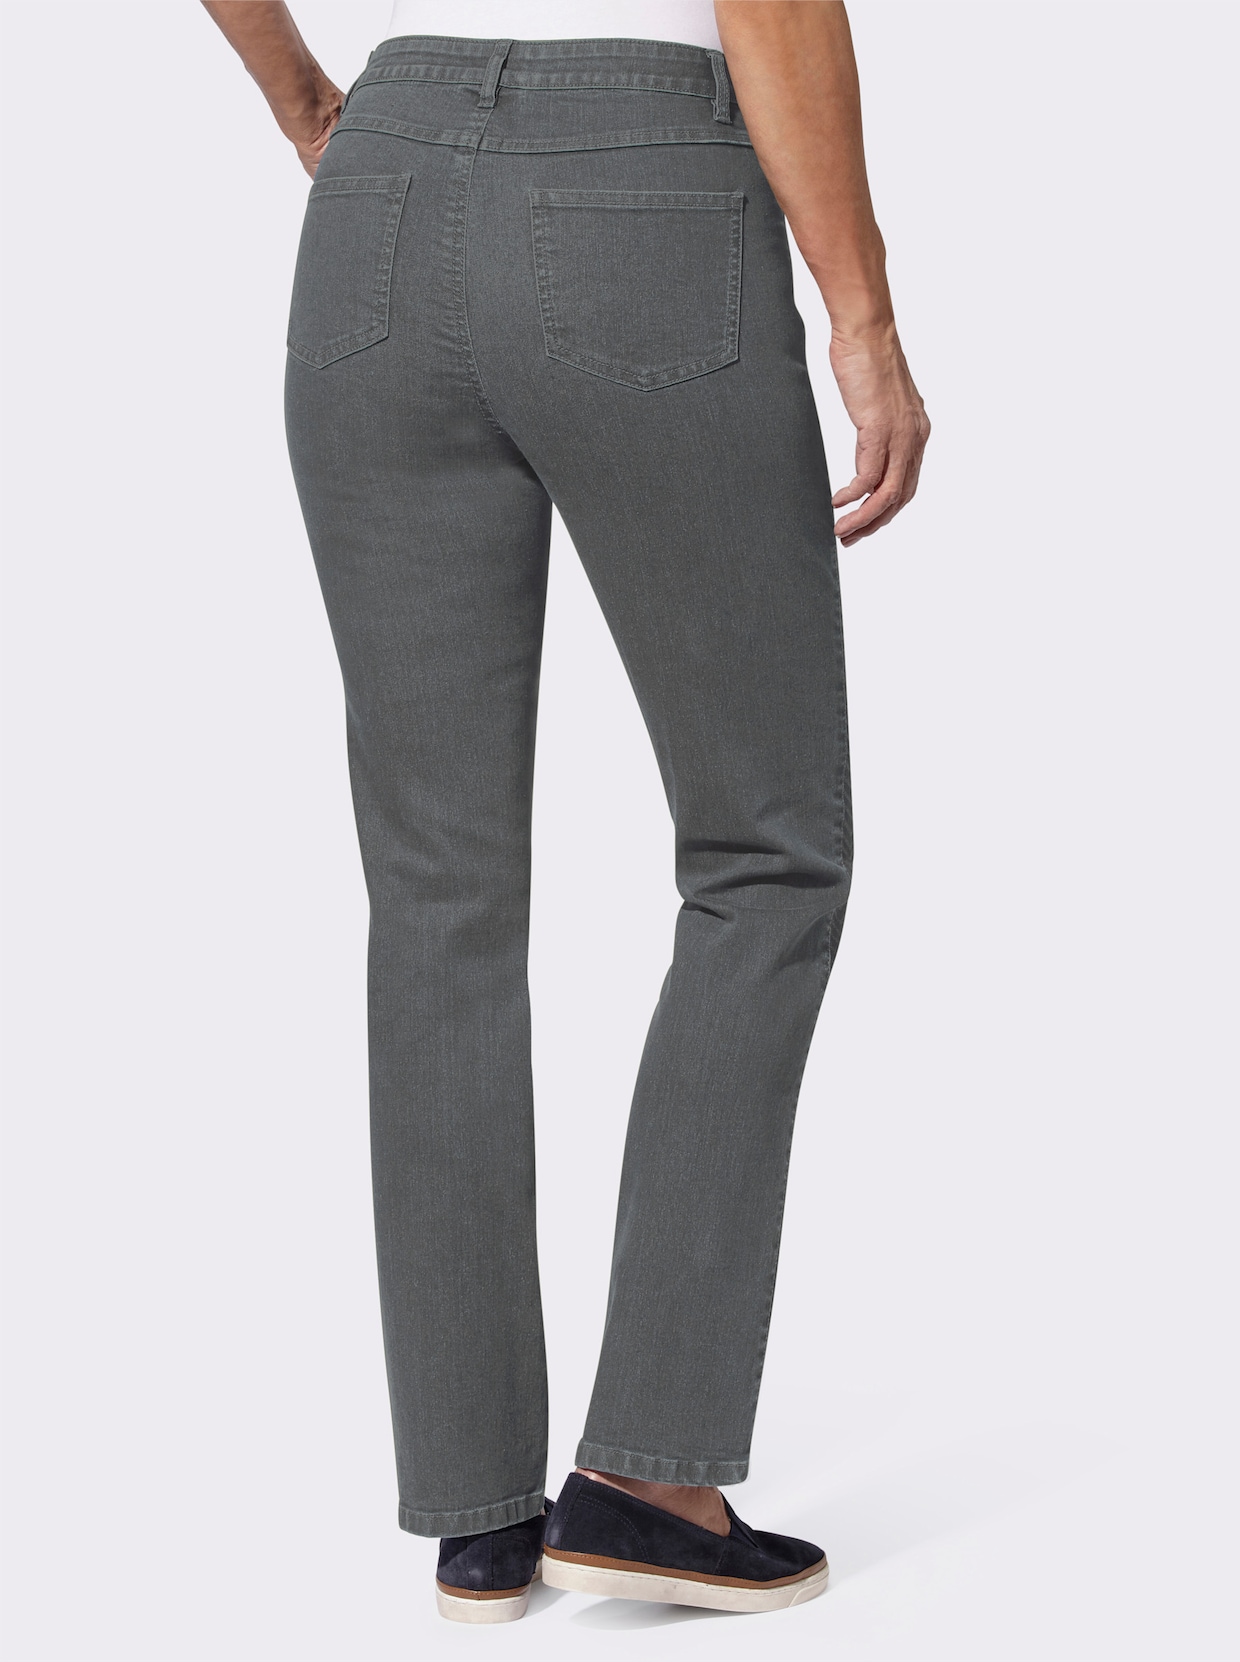 Jeans - stone-grey-denim